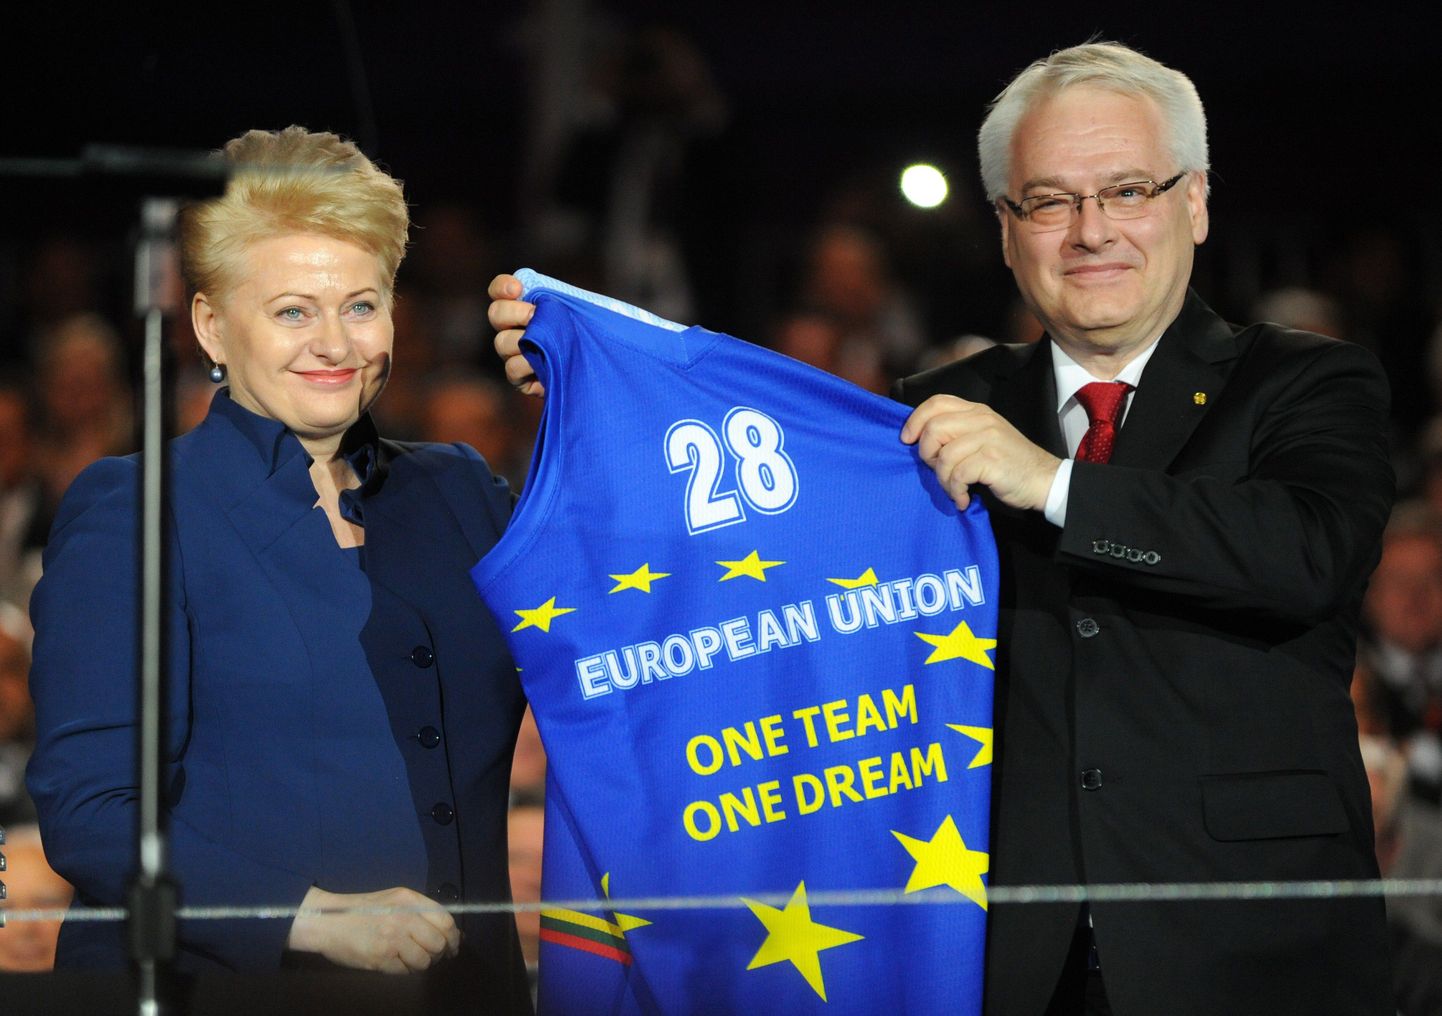 Horvaatia president Ivo Josipovic näitamas särki, mille ta sai Leedu presidendilt Dalia Grybauskaitelt Horvaatia liitumisel ELiga